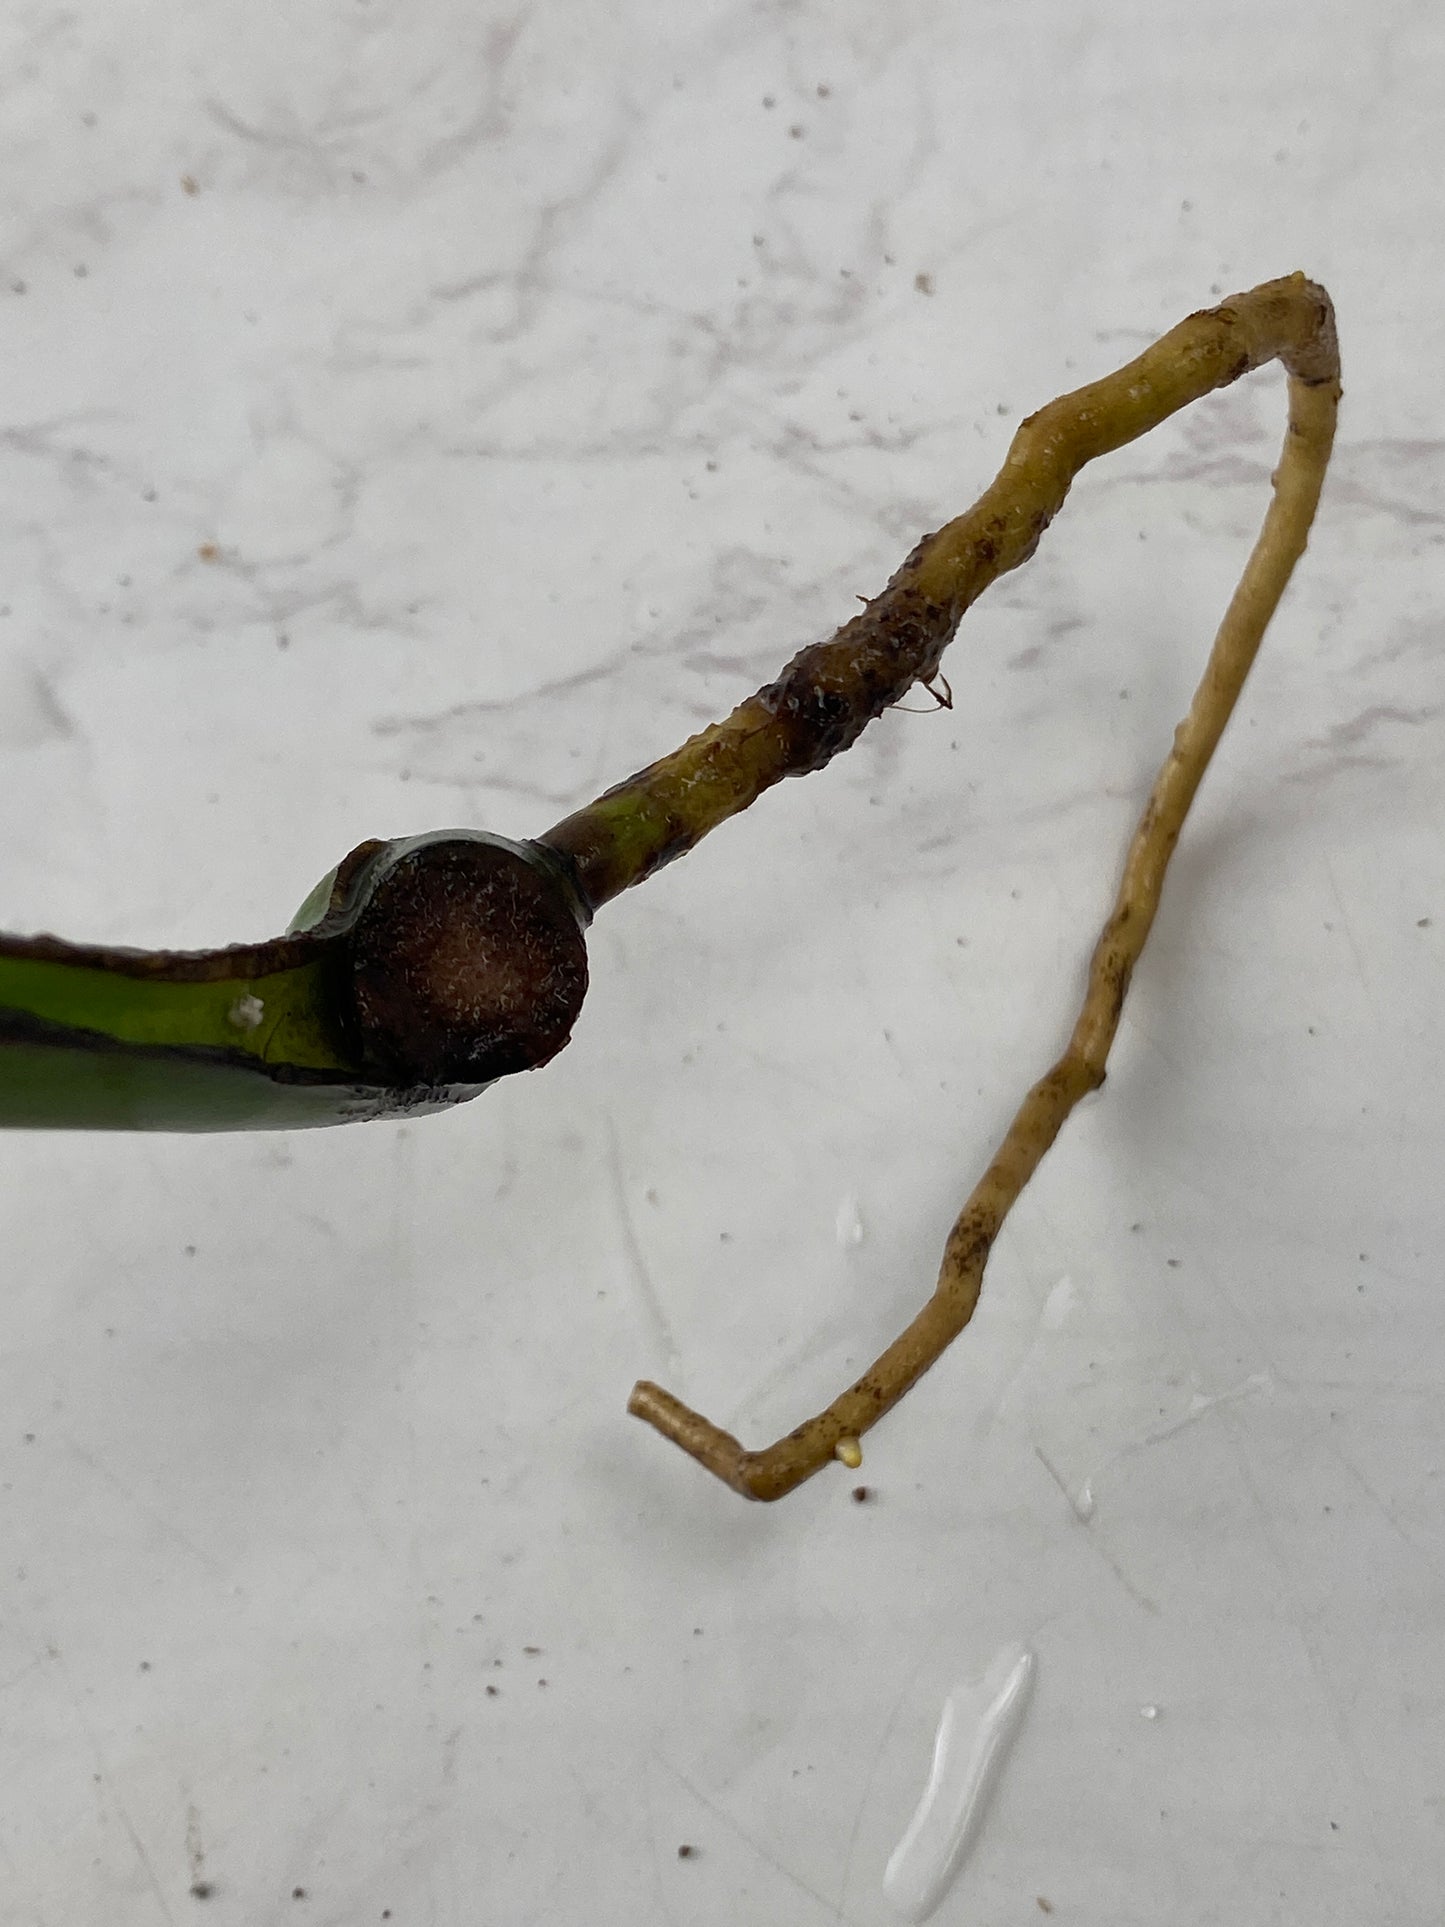 Monstera Burle Marx Flame 1 leaf 1 growing bud rooting